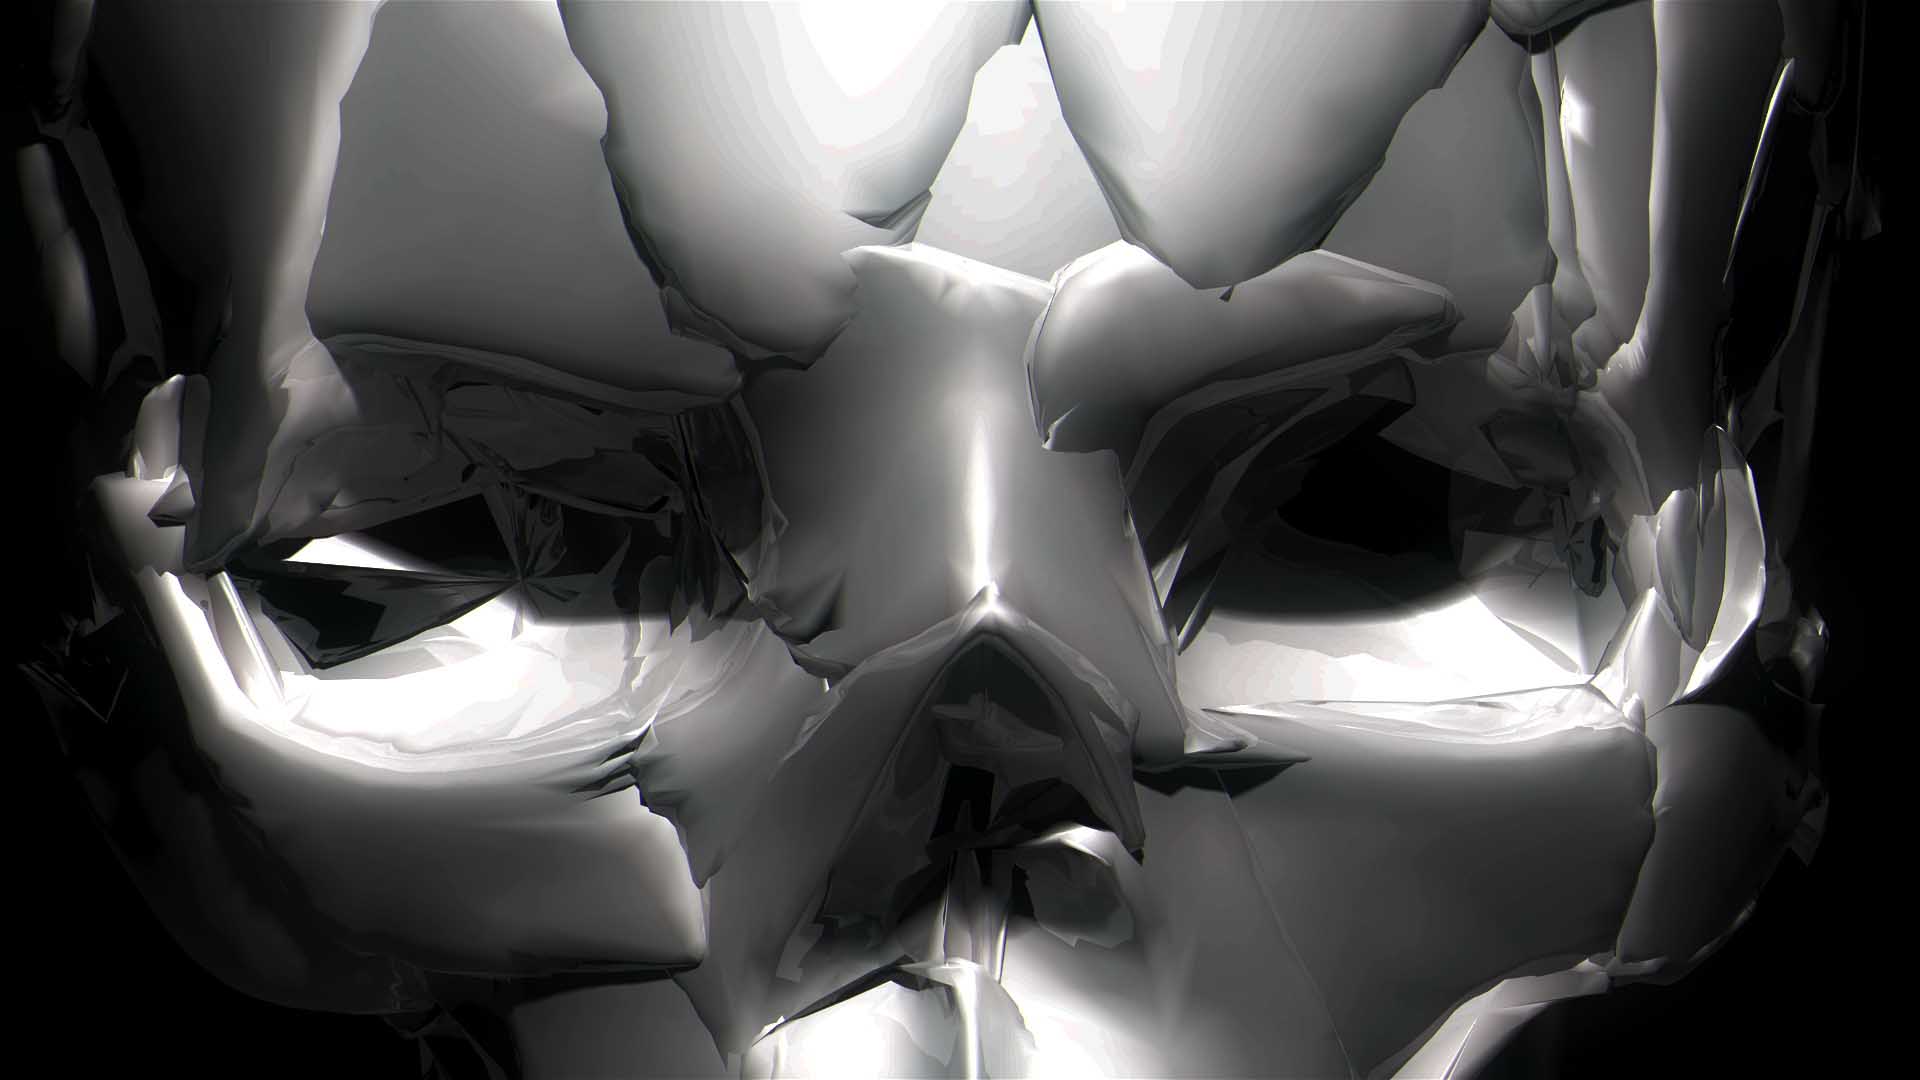 Skull 3D Displace – Video VJ Loops Pack Vol.44